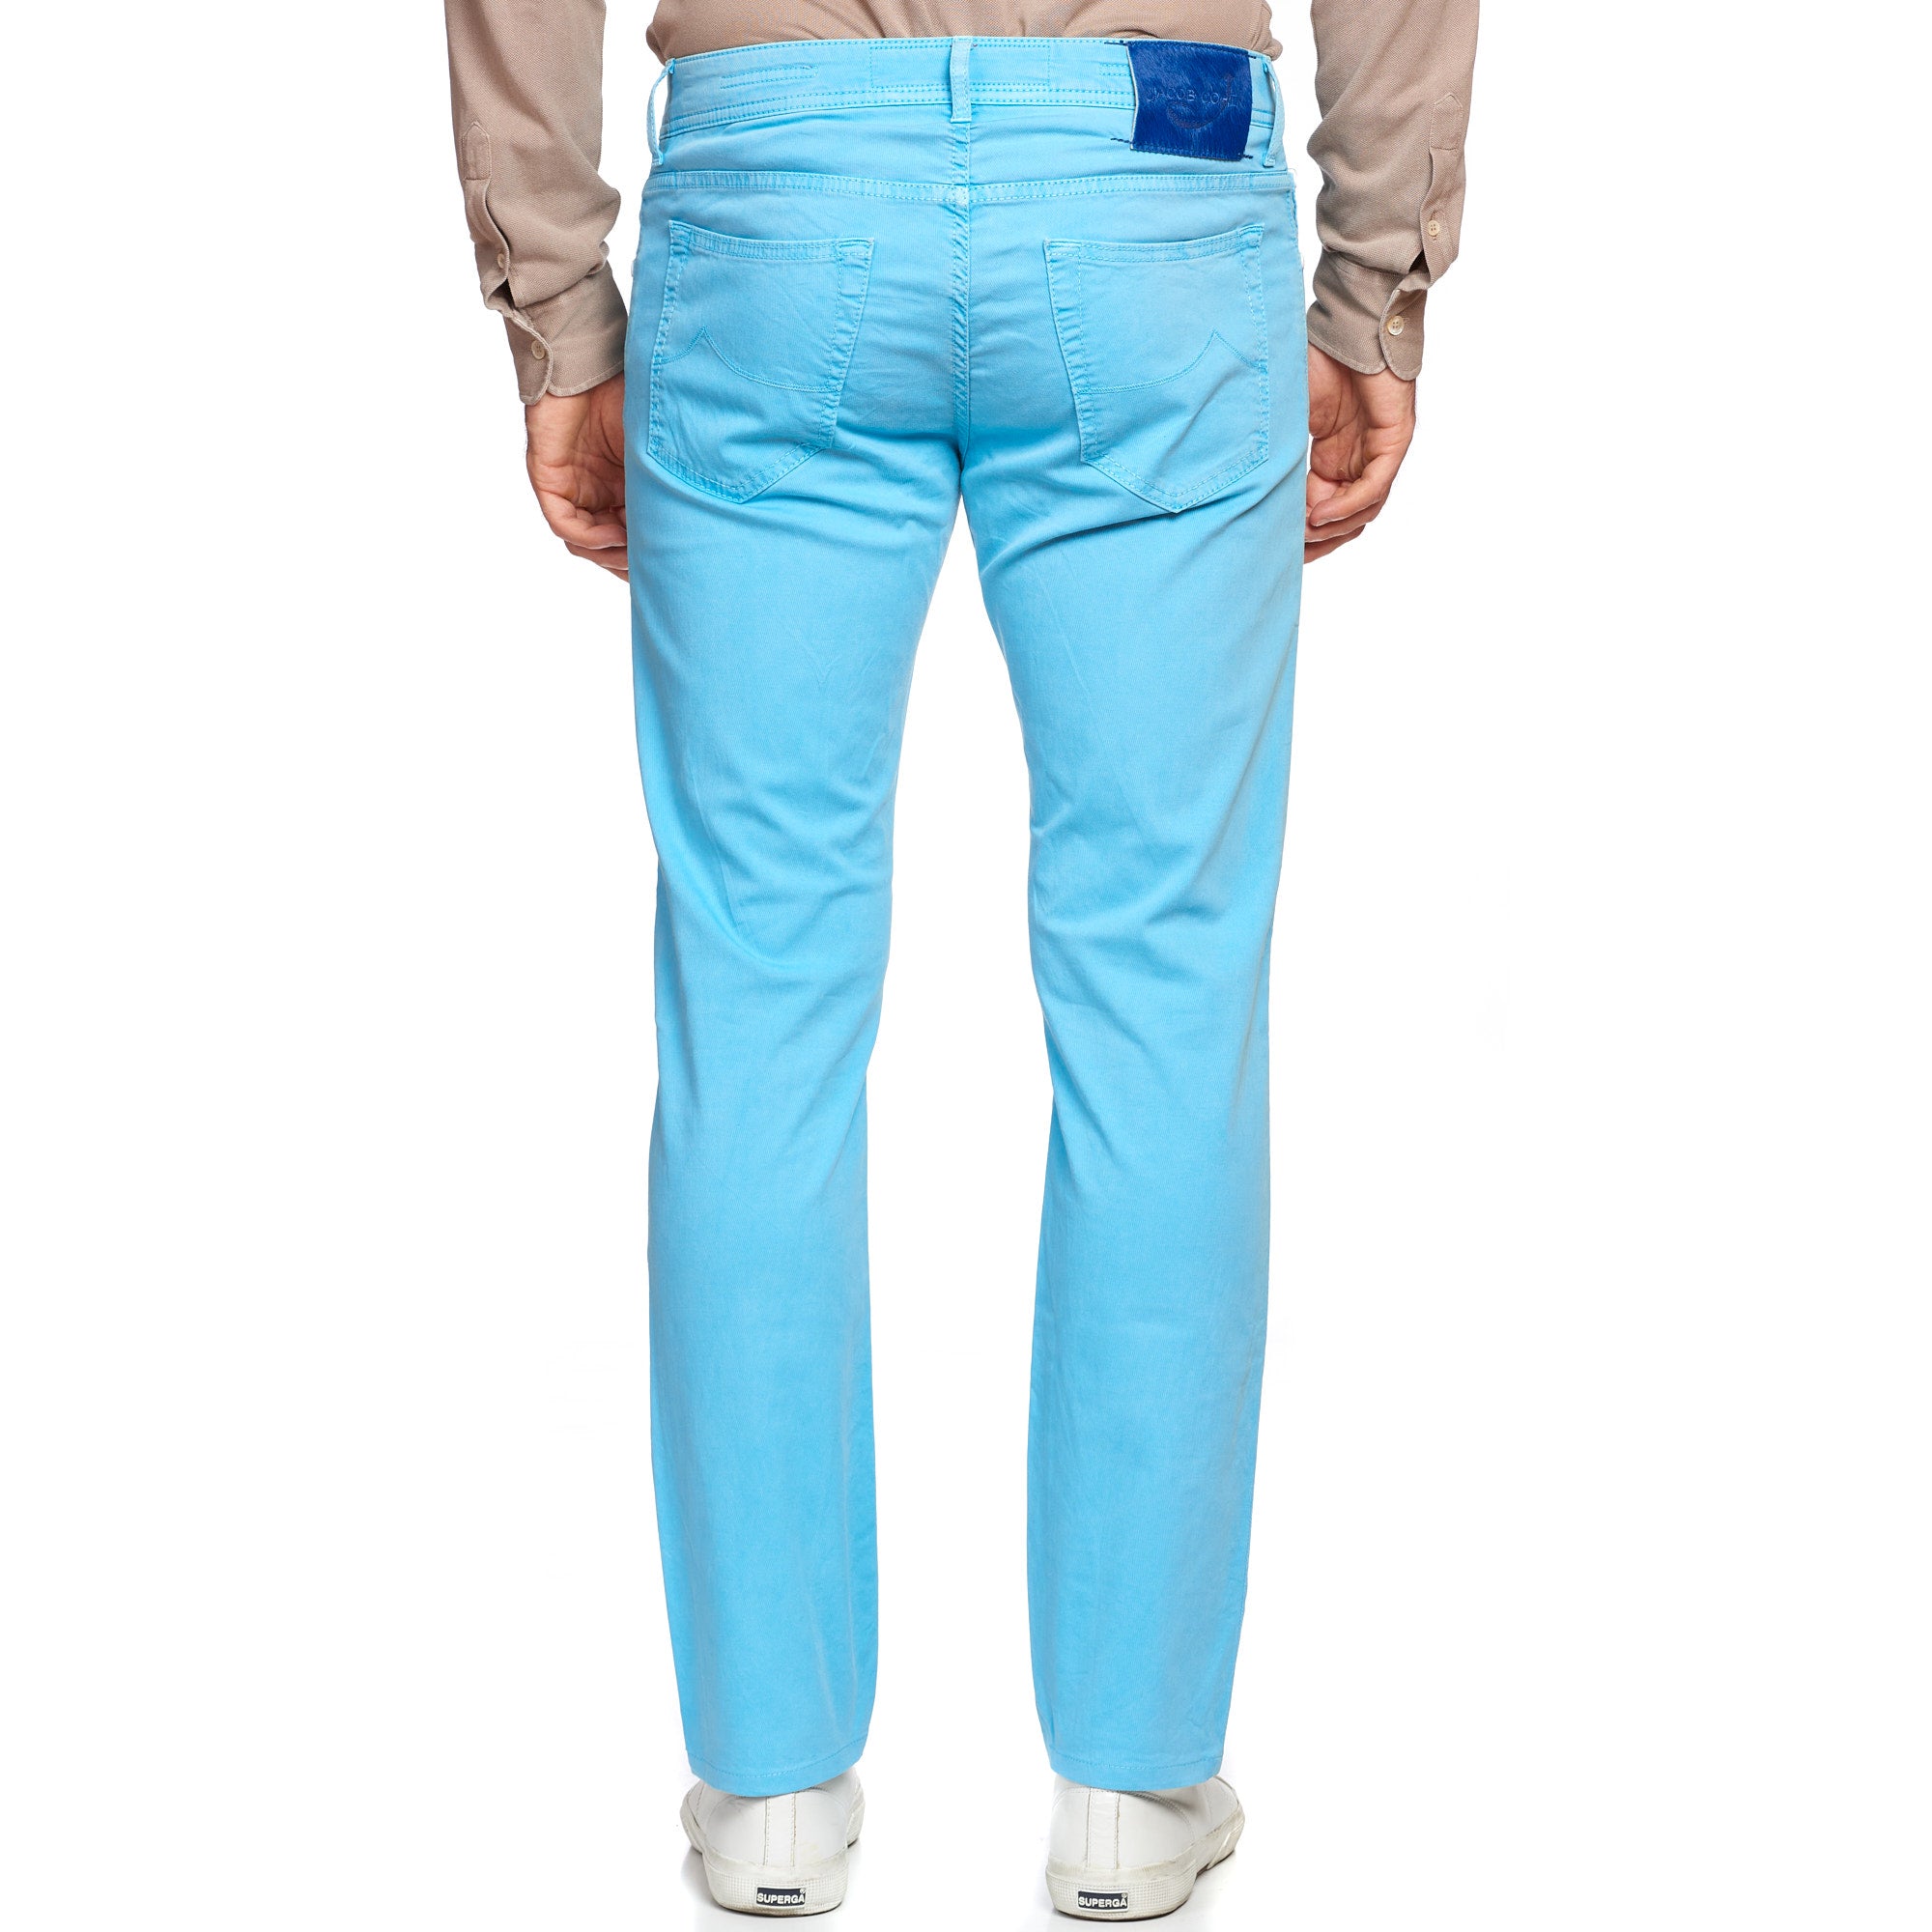 JACOB COHEN J688 Comfort Vintage Light Blue Cotton Stretch Slim Fit Jeans Pants US 33 JACOB COHEN